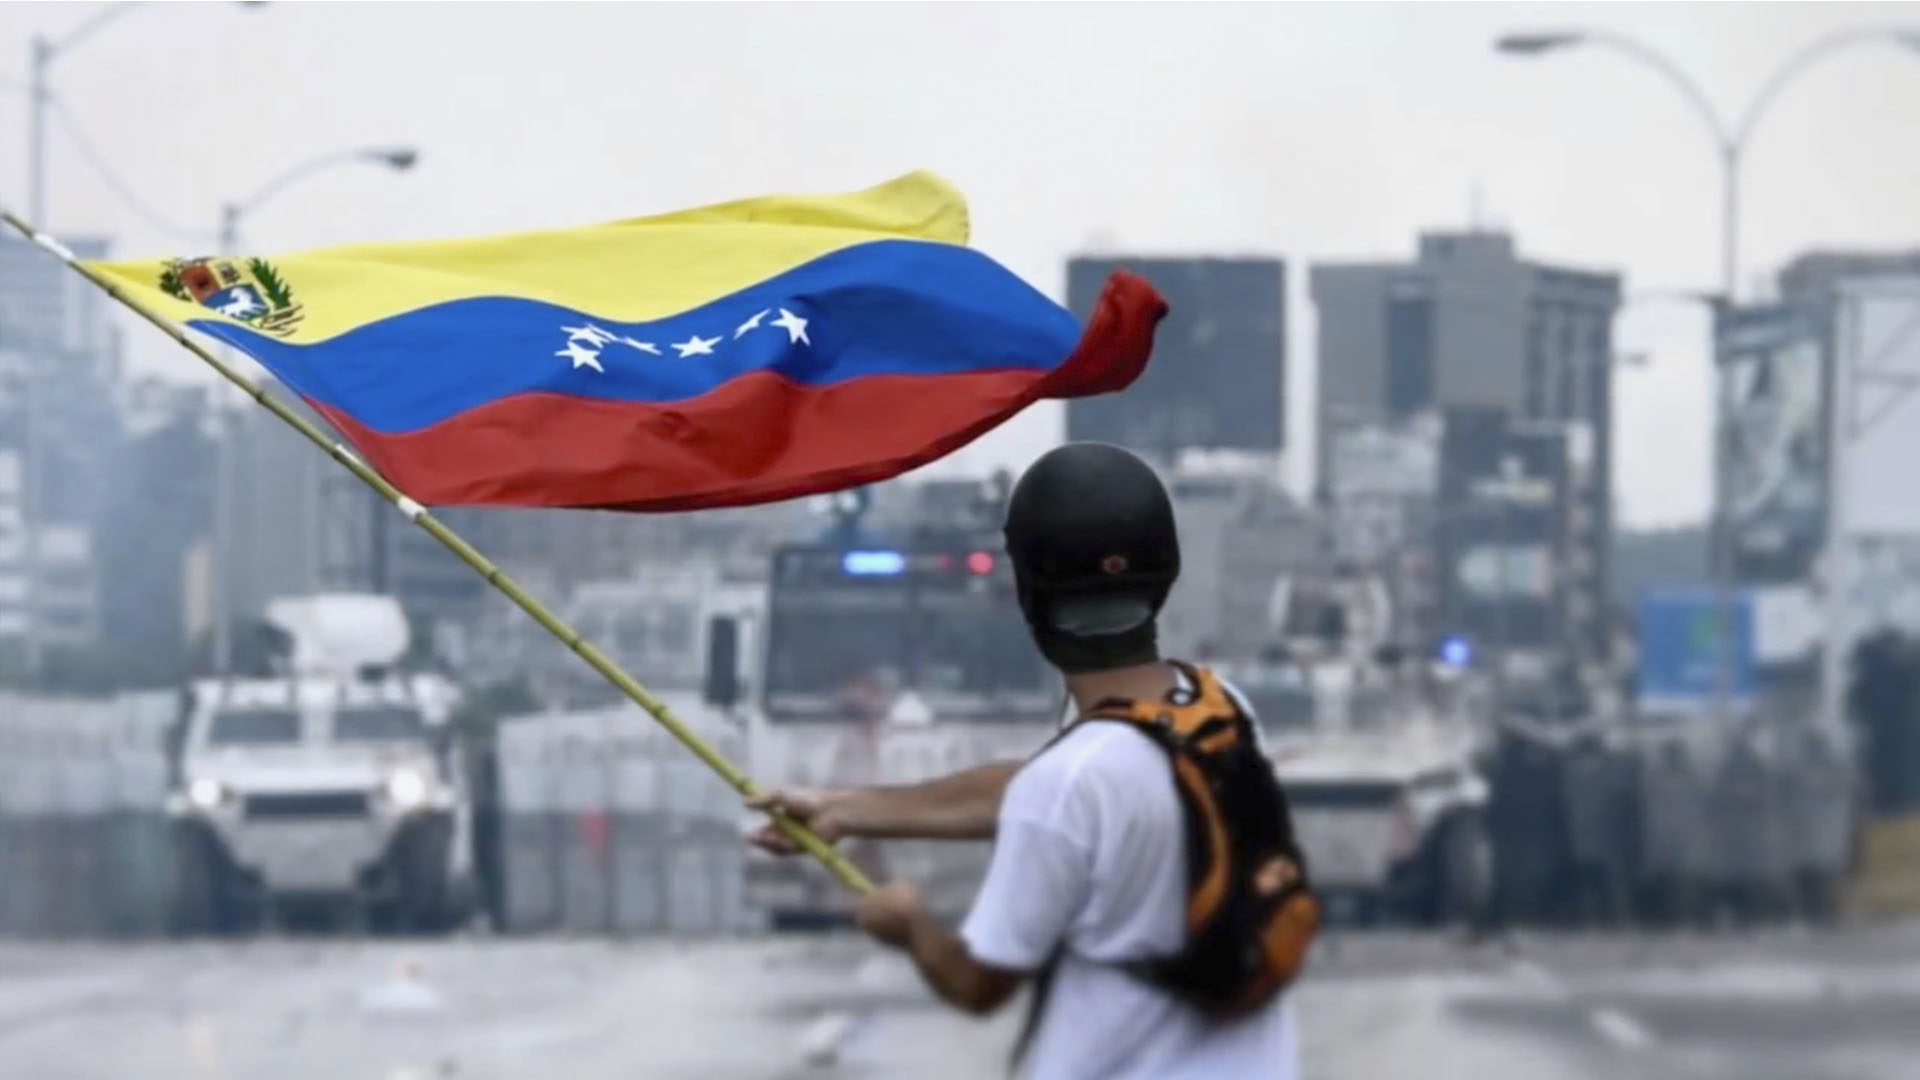 L'opposition a démenti les huit millions de votants annoncés par les autorités vénézuéliennes. Les manifestations se poursuivent dans le pays. (Photo: Wikimedia commons/CC BY 3.0)